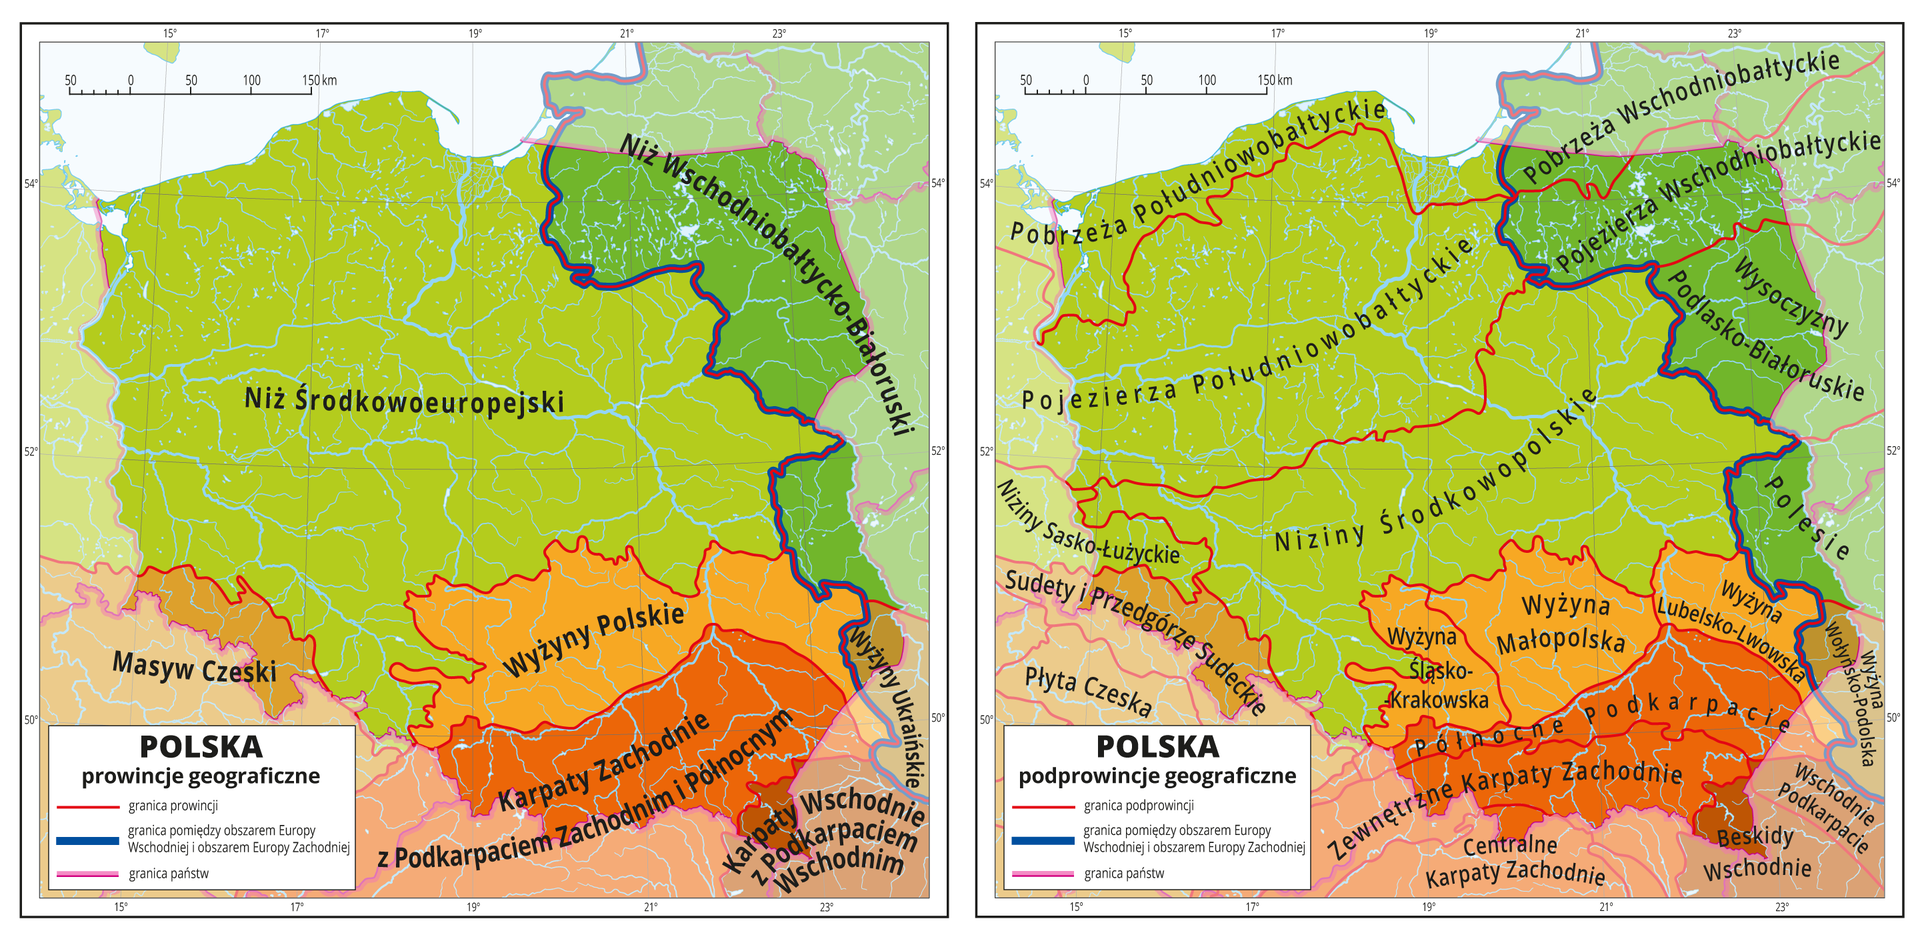 Ilustracja zawiera dwie mapy Polski, pierwsza zawiera prowincje geograficzne, a druga podprowincje geograficzne. Na pierwszej mapie czerwonymi liniami zaznaczono granice między prowincjami geograficznymi, Różnymi odcieniami koloru czerwonego, pomarańczowego i zielonego oznaczono poszczególne prowincje i opisano je: Niż Środkowoeuropejski, Niż Wschodniobałtycko-Białoruski, Masyw Czeski, Wyżyny Polskie, Wyżyny Ukraińskie, Karpaty Zachodnie z Podkarpaciem Zachodnim i Północnym oraz Karpaty Wschodnie z Podkarpaciem Wschodnim. Wszystkie te prowincje obejmują tereny Polski i sięgają poza granice kraju. Największą część mapy zajmuje Niż Środkowoeuropejski obejmujący zachodnią, północno-zachodnią i centralną część Polski oraz Niemcy. Na drugiej mapie różnymi odcieniami koloru czerwonego, pomarańczowego i zielonego oznaczono poszczególne prowincje z pierwszej mapy, a czerwonymi liniami zaznaczono granice między podprowincjami geograficznymi w ramach wydzielonych wcześniej prowincji i opisano je. W obrębie Niżu Środkowoeuropejskiego opisano Pobrzeża Południowobałtyckie i Pojezierza Południowobałtyckie oraz Niziny Środkowopolskie i Niziny Sasko-Łużyckie. W obrębie Wyżyn Polskich opisano Wyżynę Śląsko-Krakowską, Wyżynę Małopolską i Wyżynę Lubelsko-Lwowską. Karpaty Wschodnie i Zachodnie również rozbito na pięć mniejszych podprowincji, które opisano. Niż Wschodniobałtycko-Białoruski obejmuje cztery podprowincje, a w obrębie prowincji Wyżyny Ukraińskie znalazła się podprowincja Wyżyna Wołyńsko-Podolska.